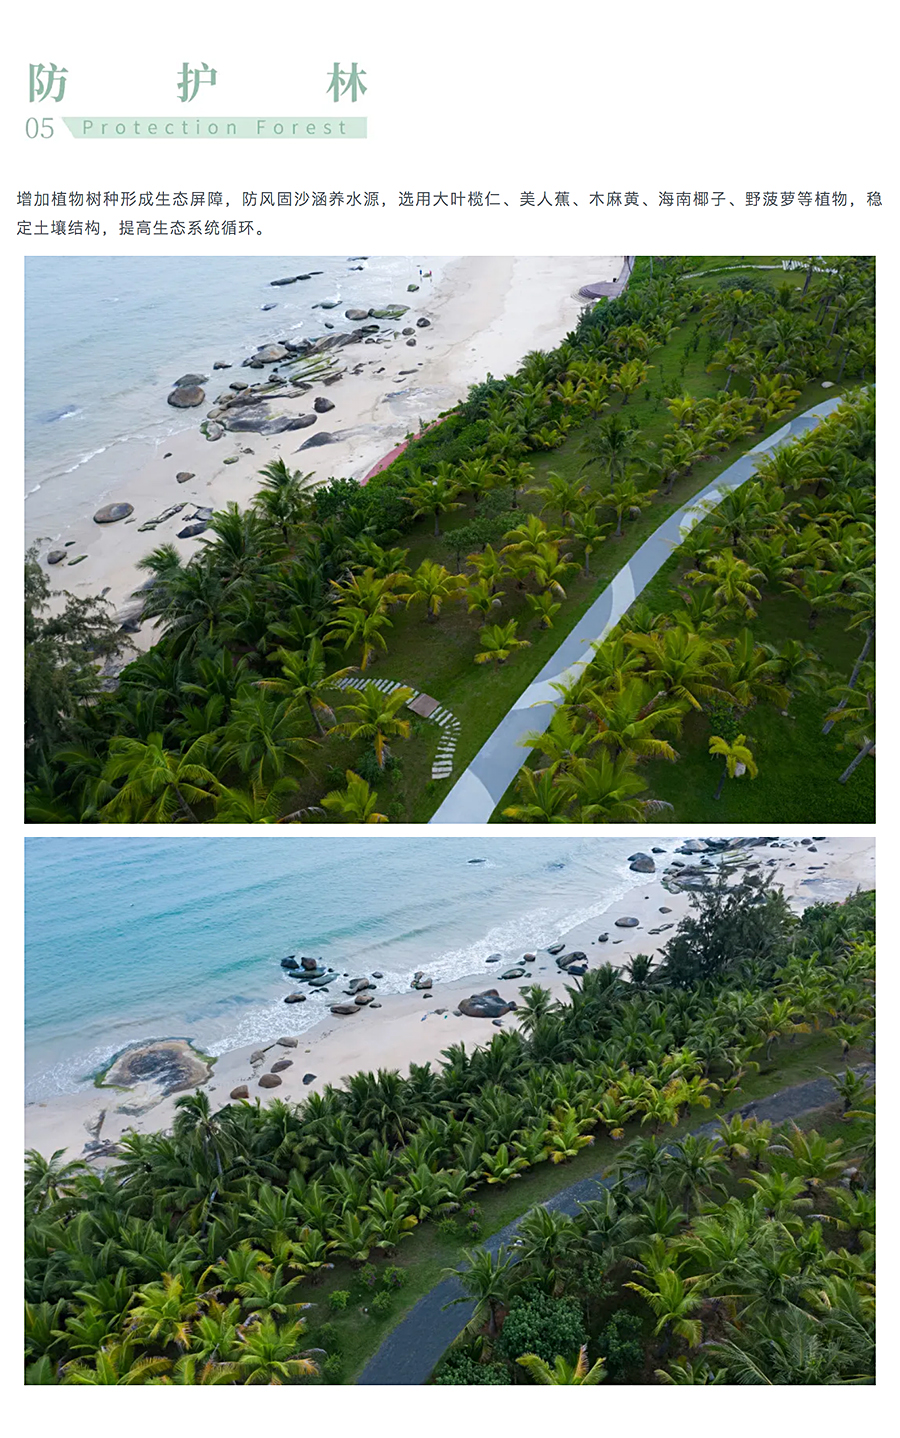 与自然共生-_-海南铜鼓岭国际生态旅游区海岸带生态修复_0022_图层-23.jpg